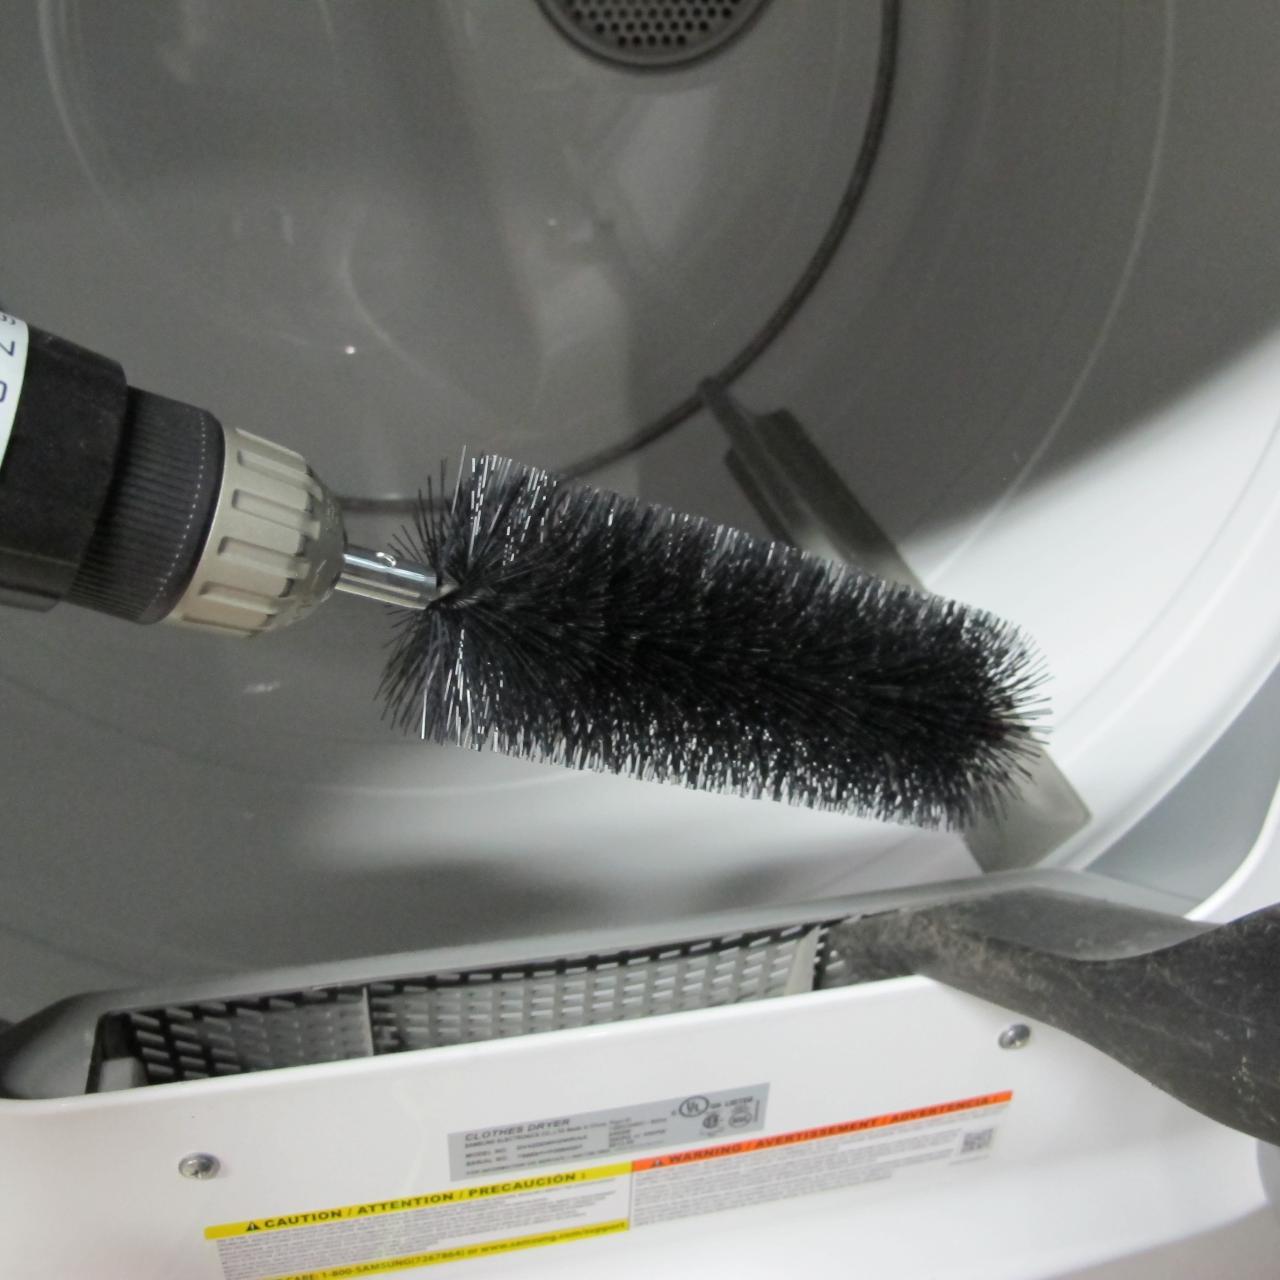  Vanitek Dryer Vent Cleaner Lint Brush, Long Flexible